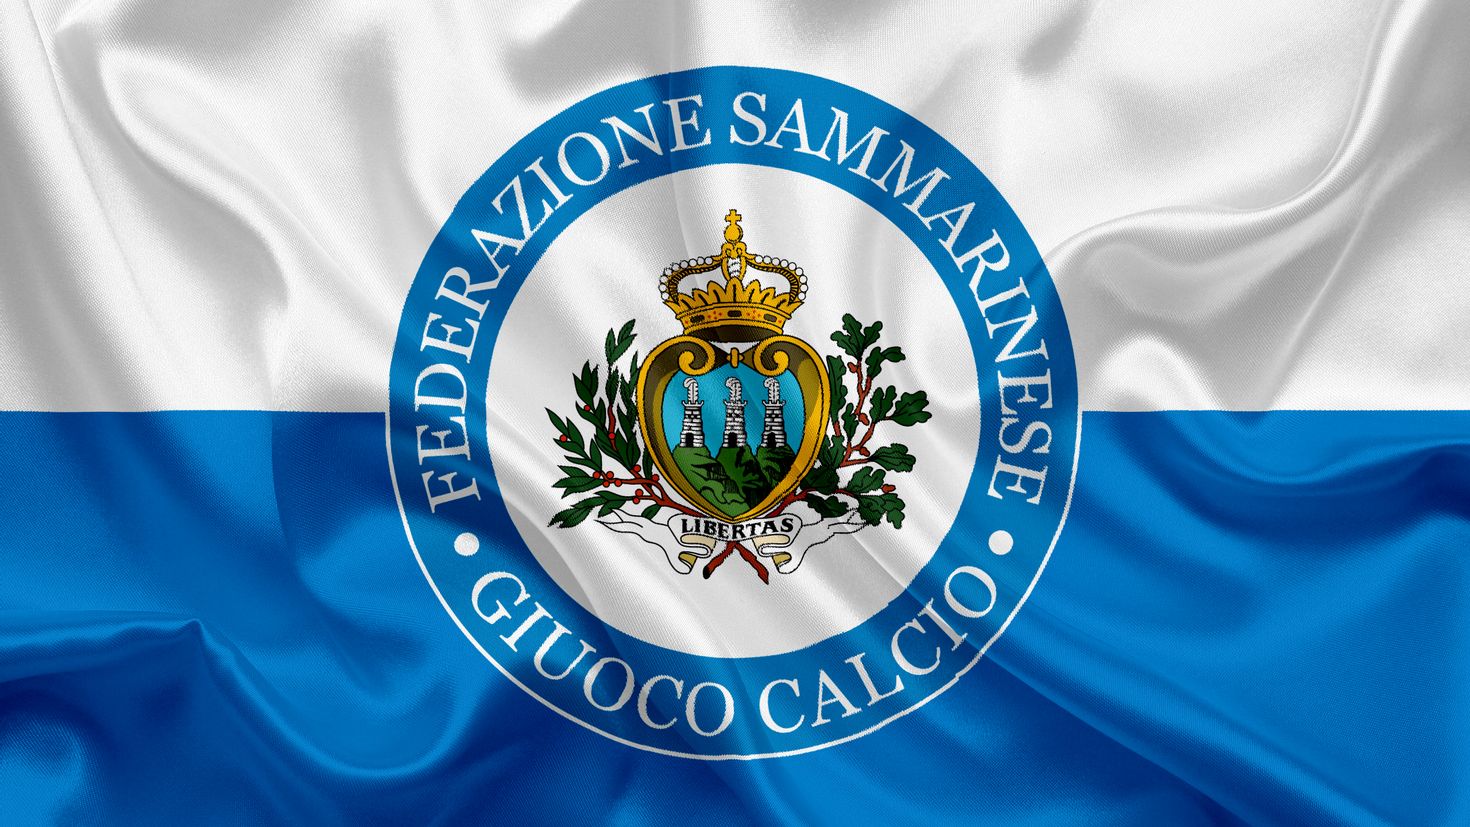 Флаг сан марино. Логотип сборной Сан Марино. Сан Марино флаг и герб. Герб Сан Марино.